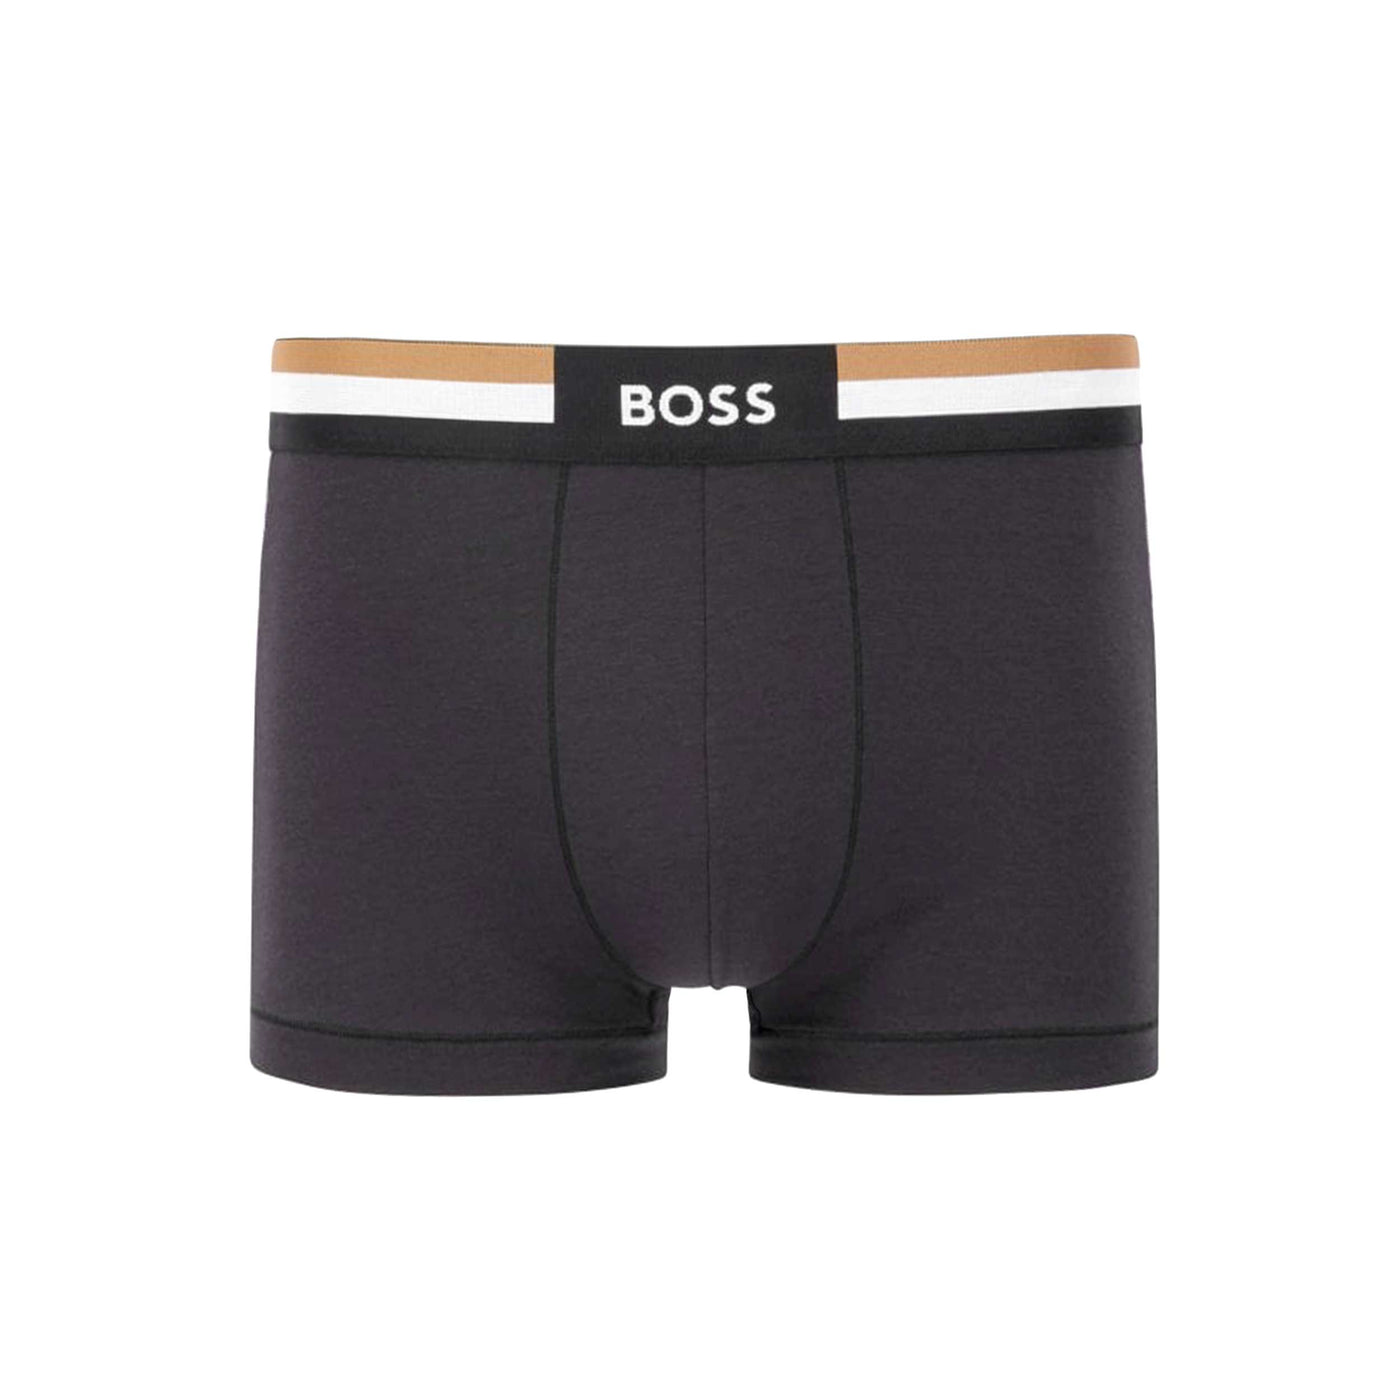 BOSS Trunk Vitality Underwear in Black